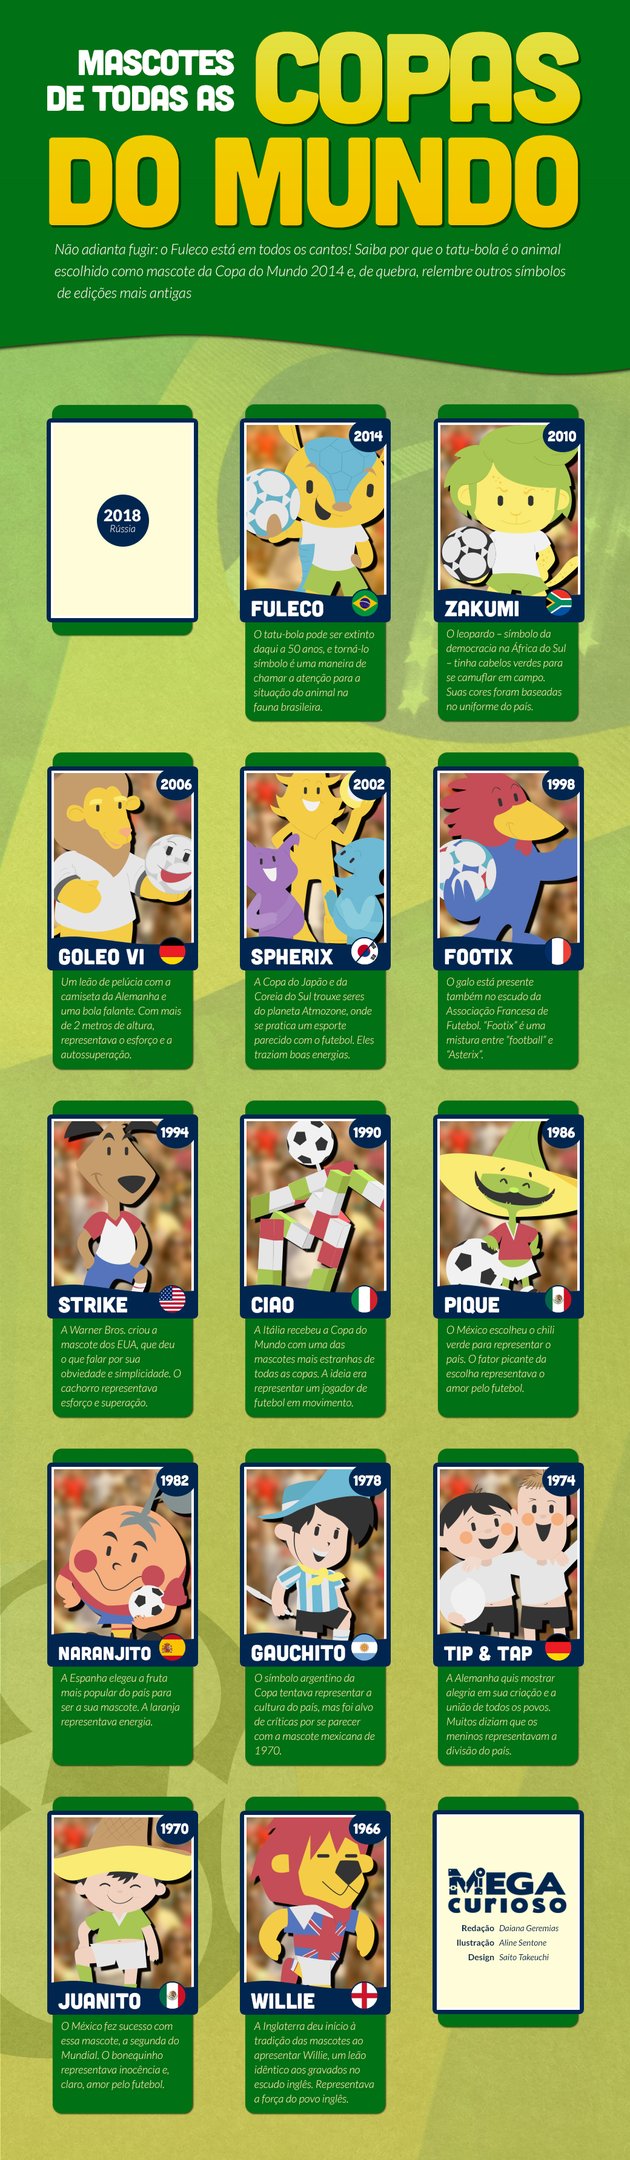 Conheça todas as mascotes das últimas edições da Copa do Mundo